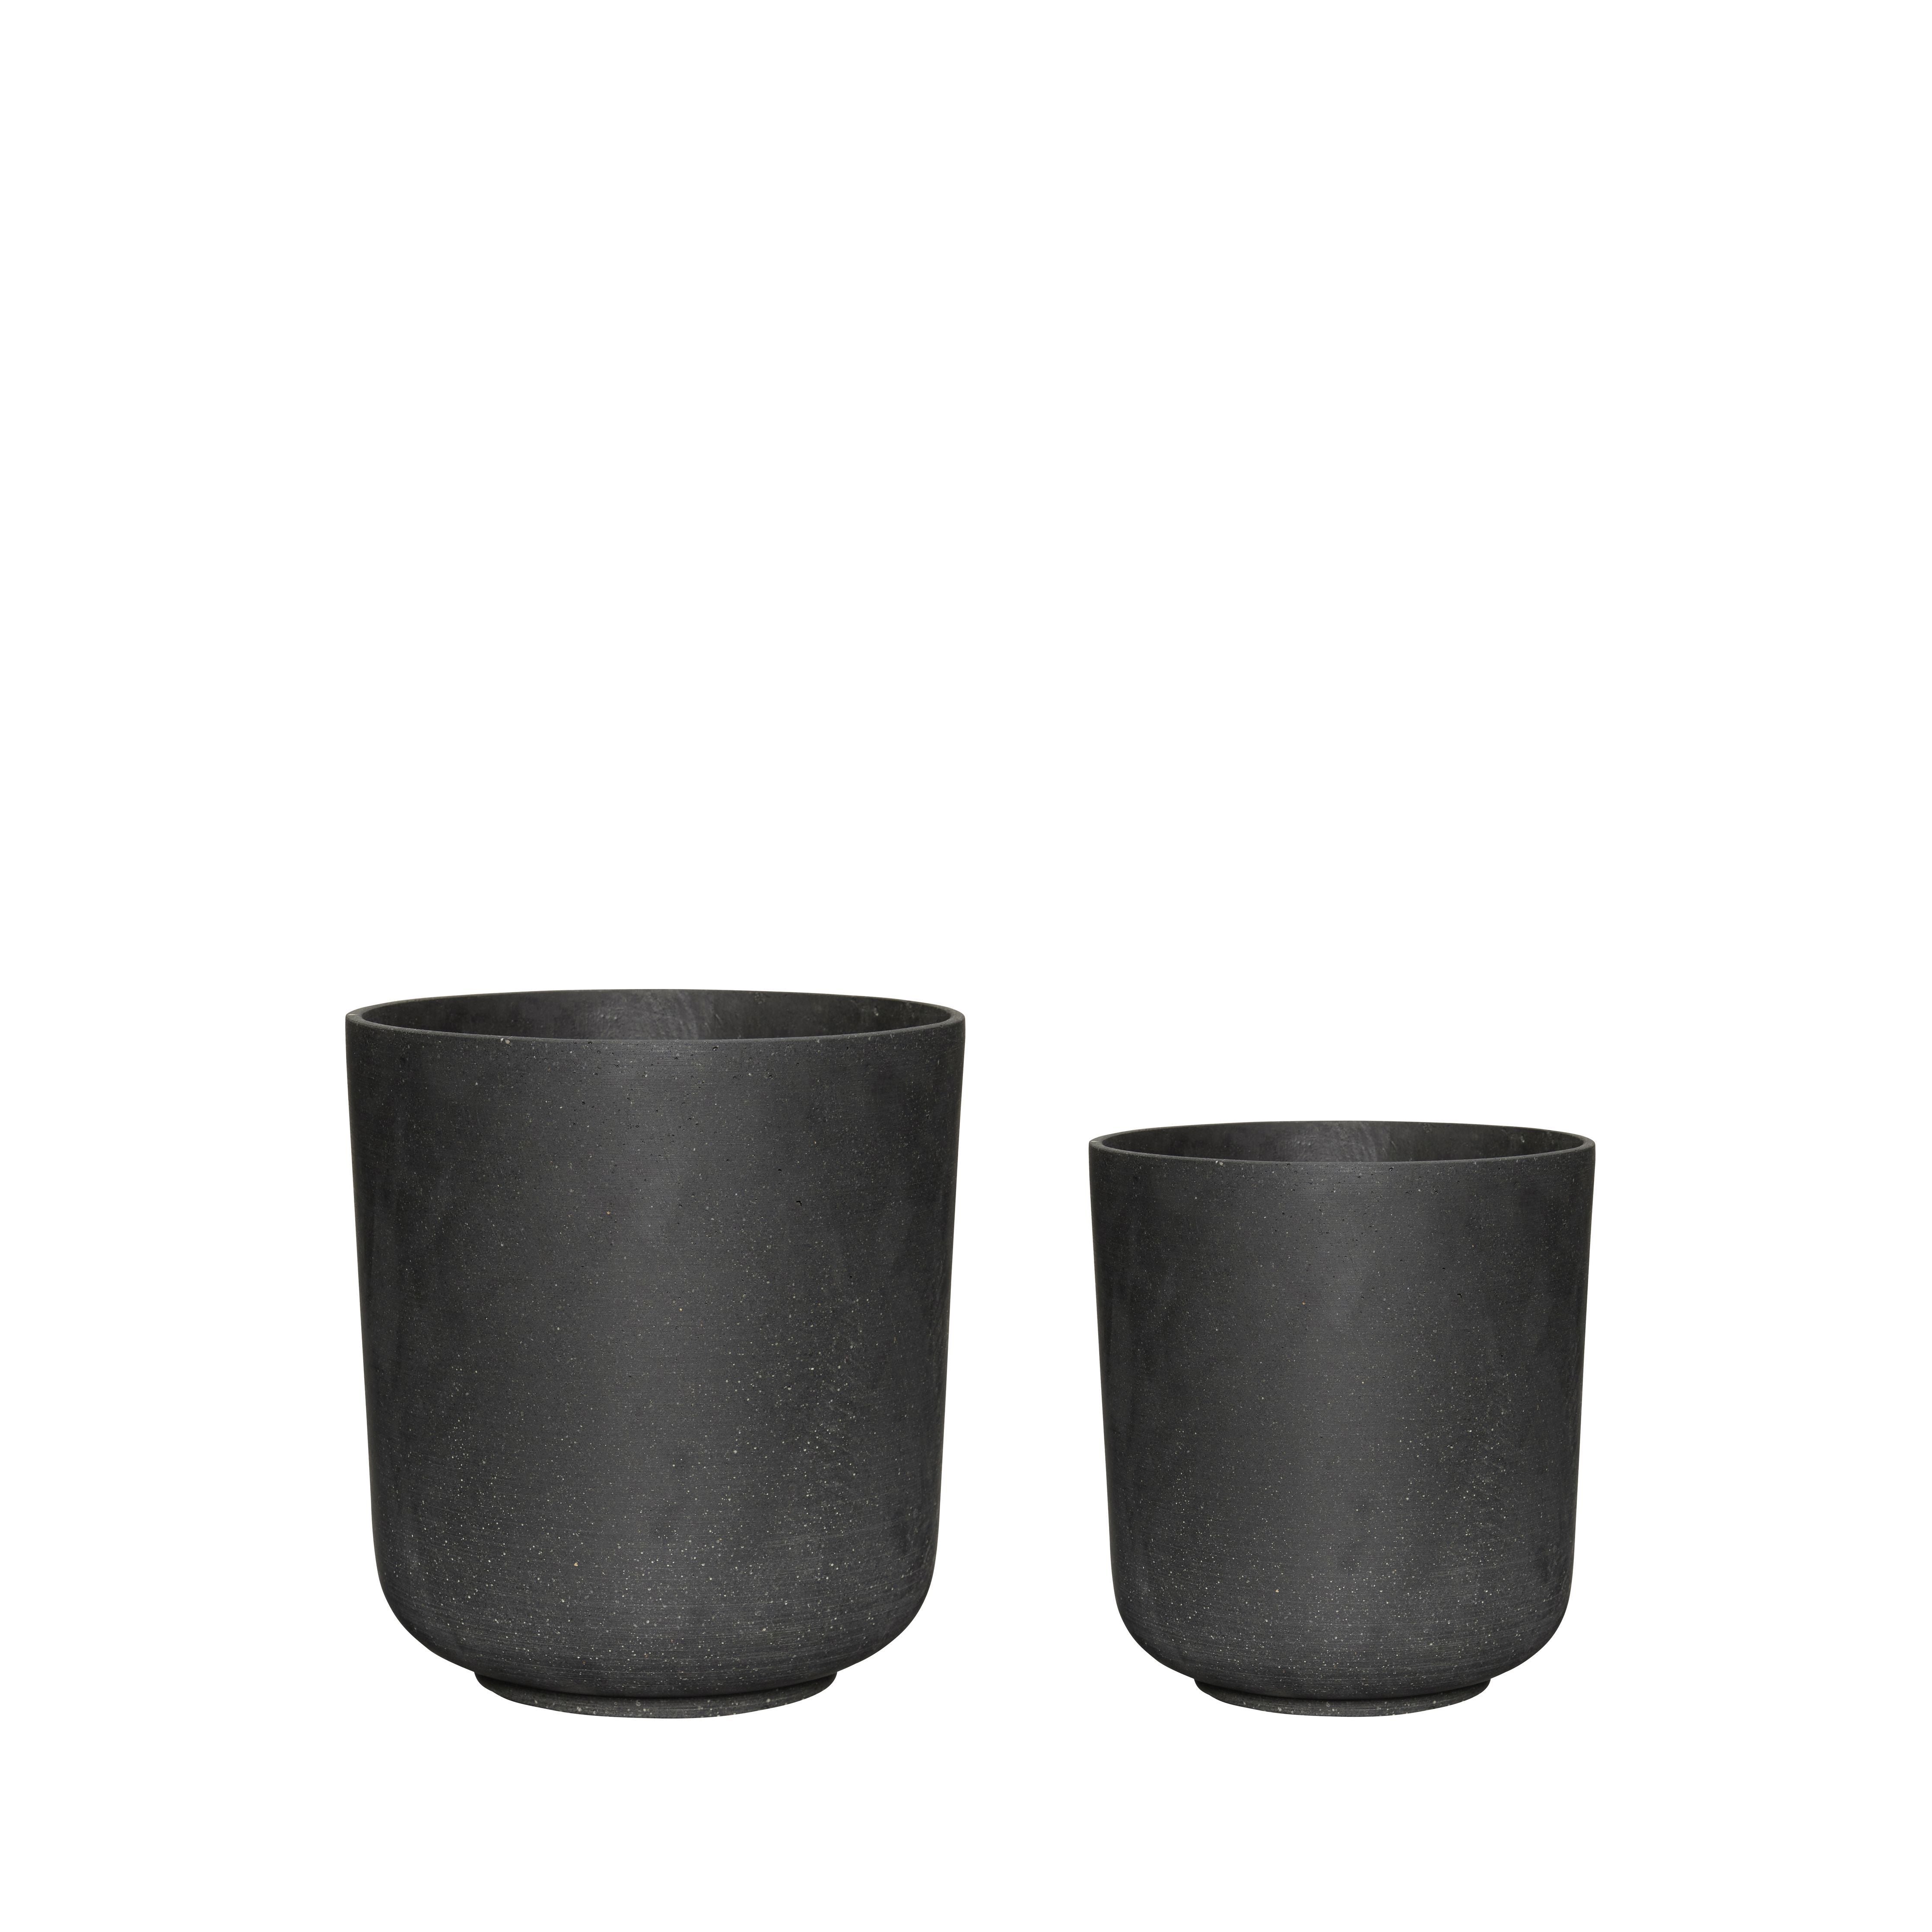 Hübsch Onder potten set van 2, zwart